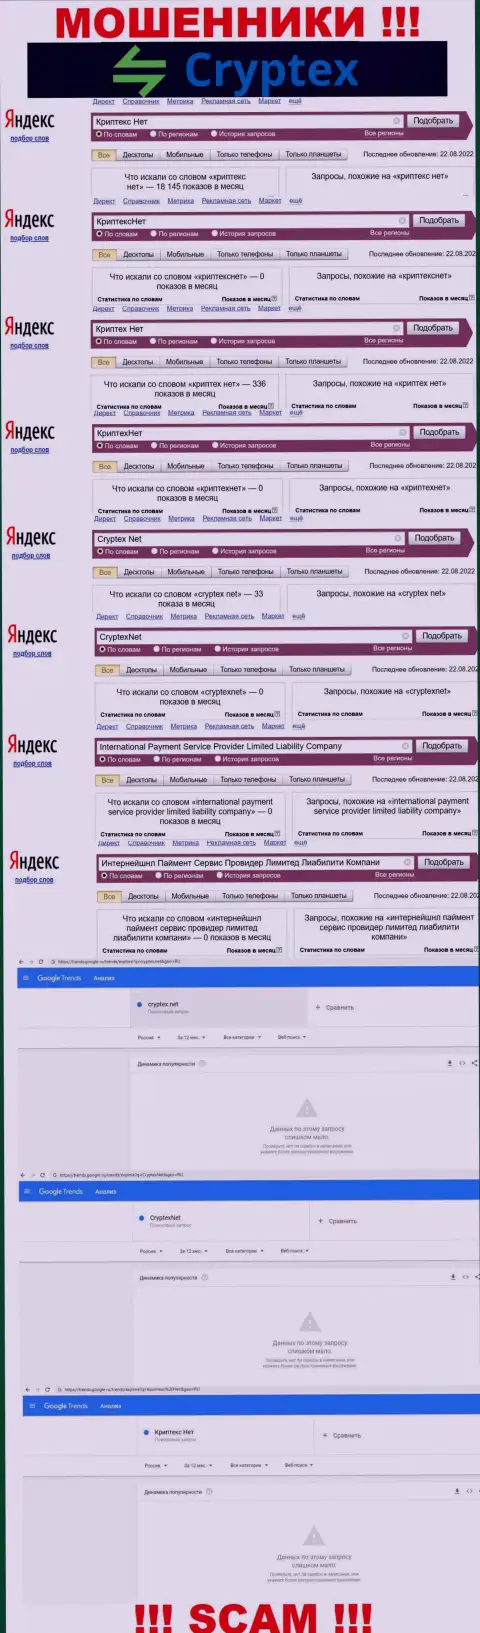 Скриншот результата онлайн-запросов по незаконно действующей организации CryptexNet